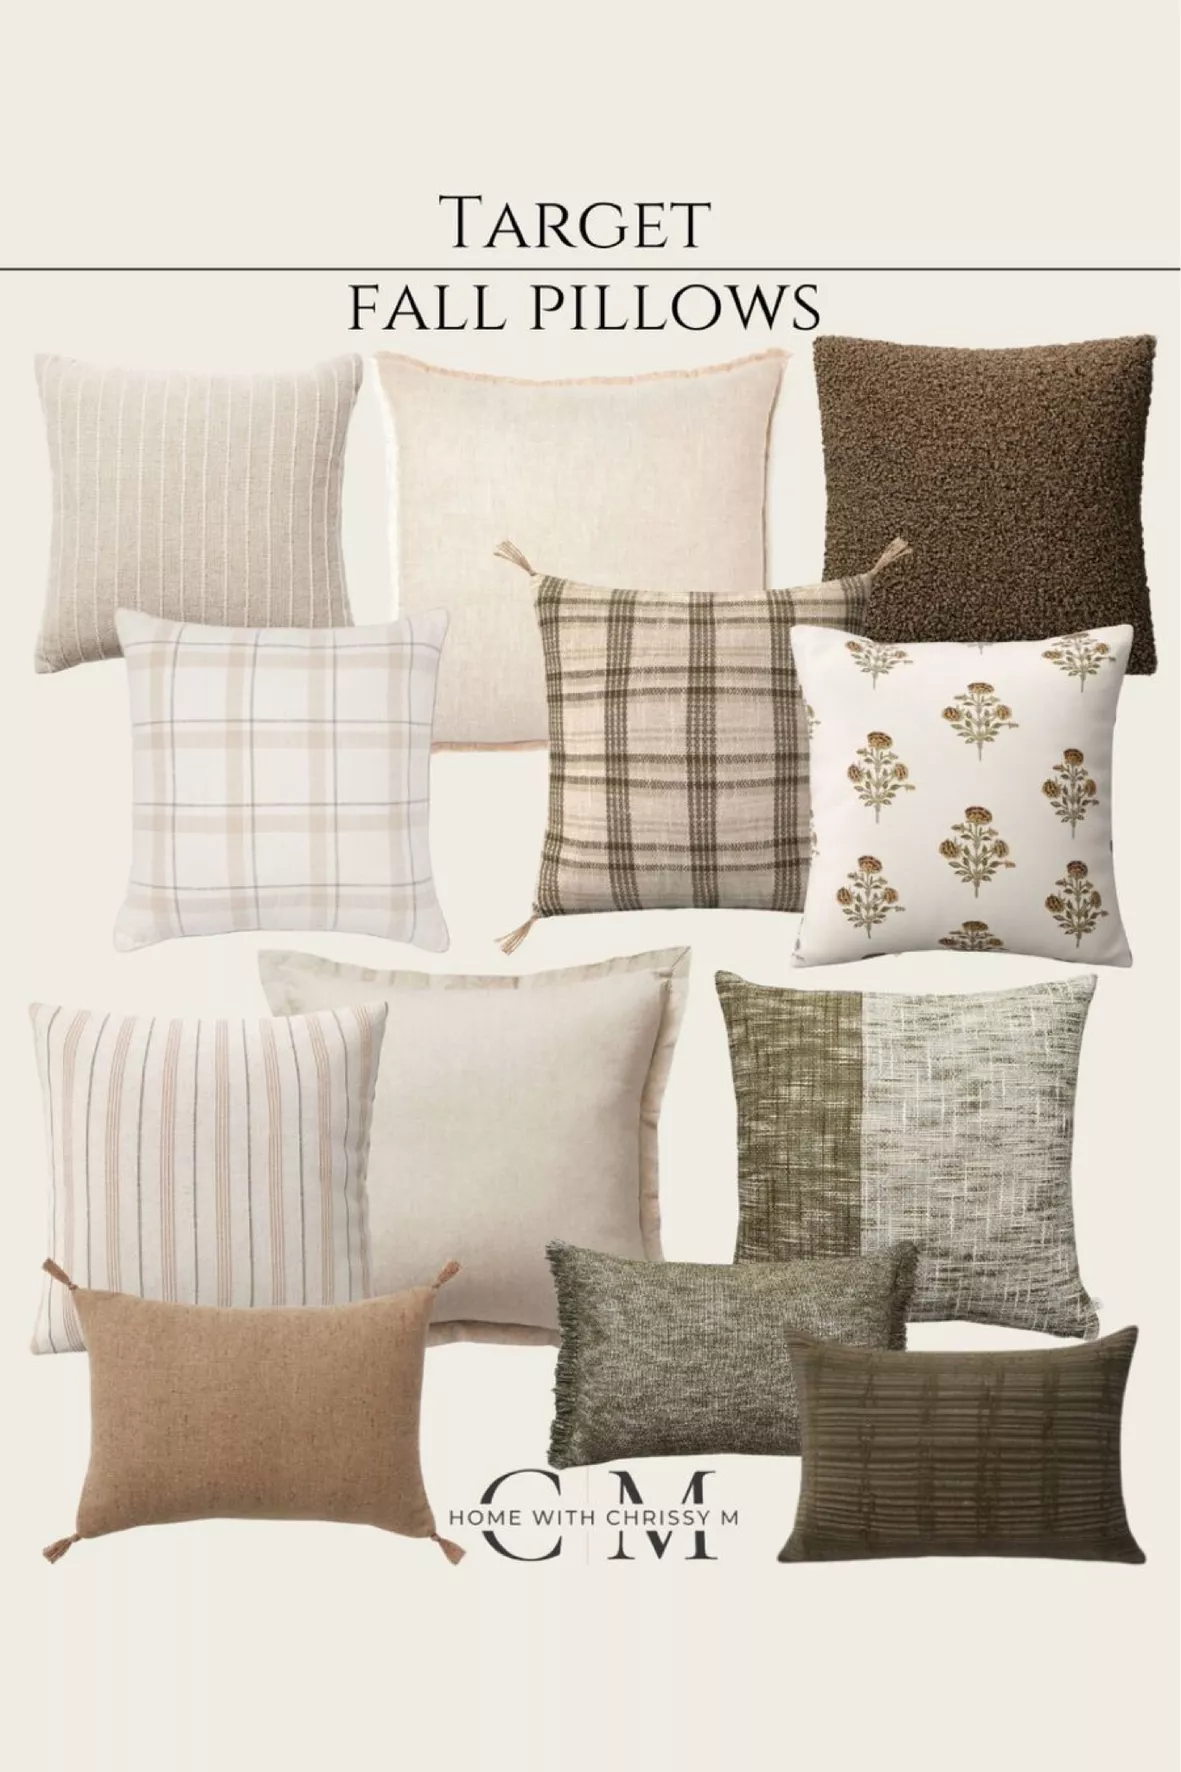 Off-White Throw Pillows